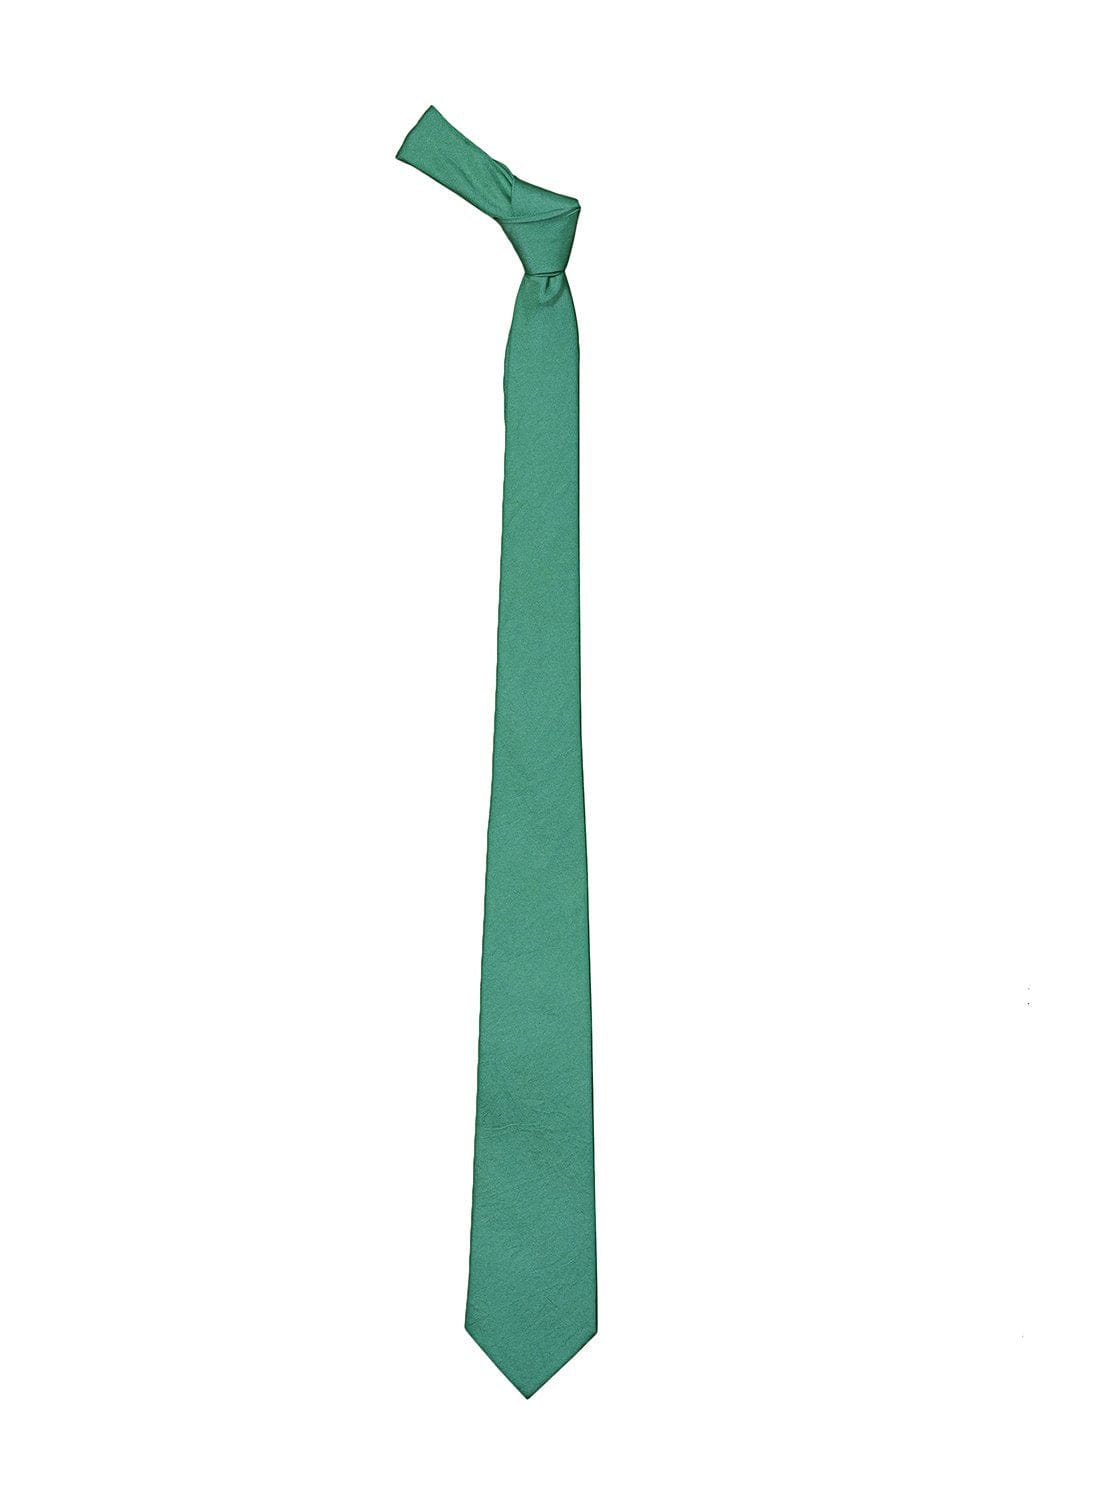 Dark Sea Green color silk tie for men